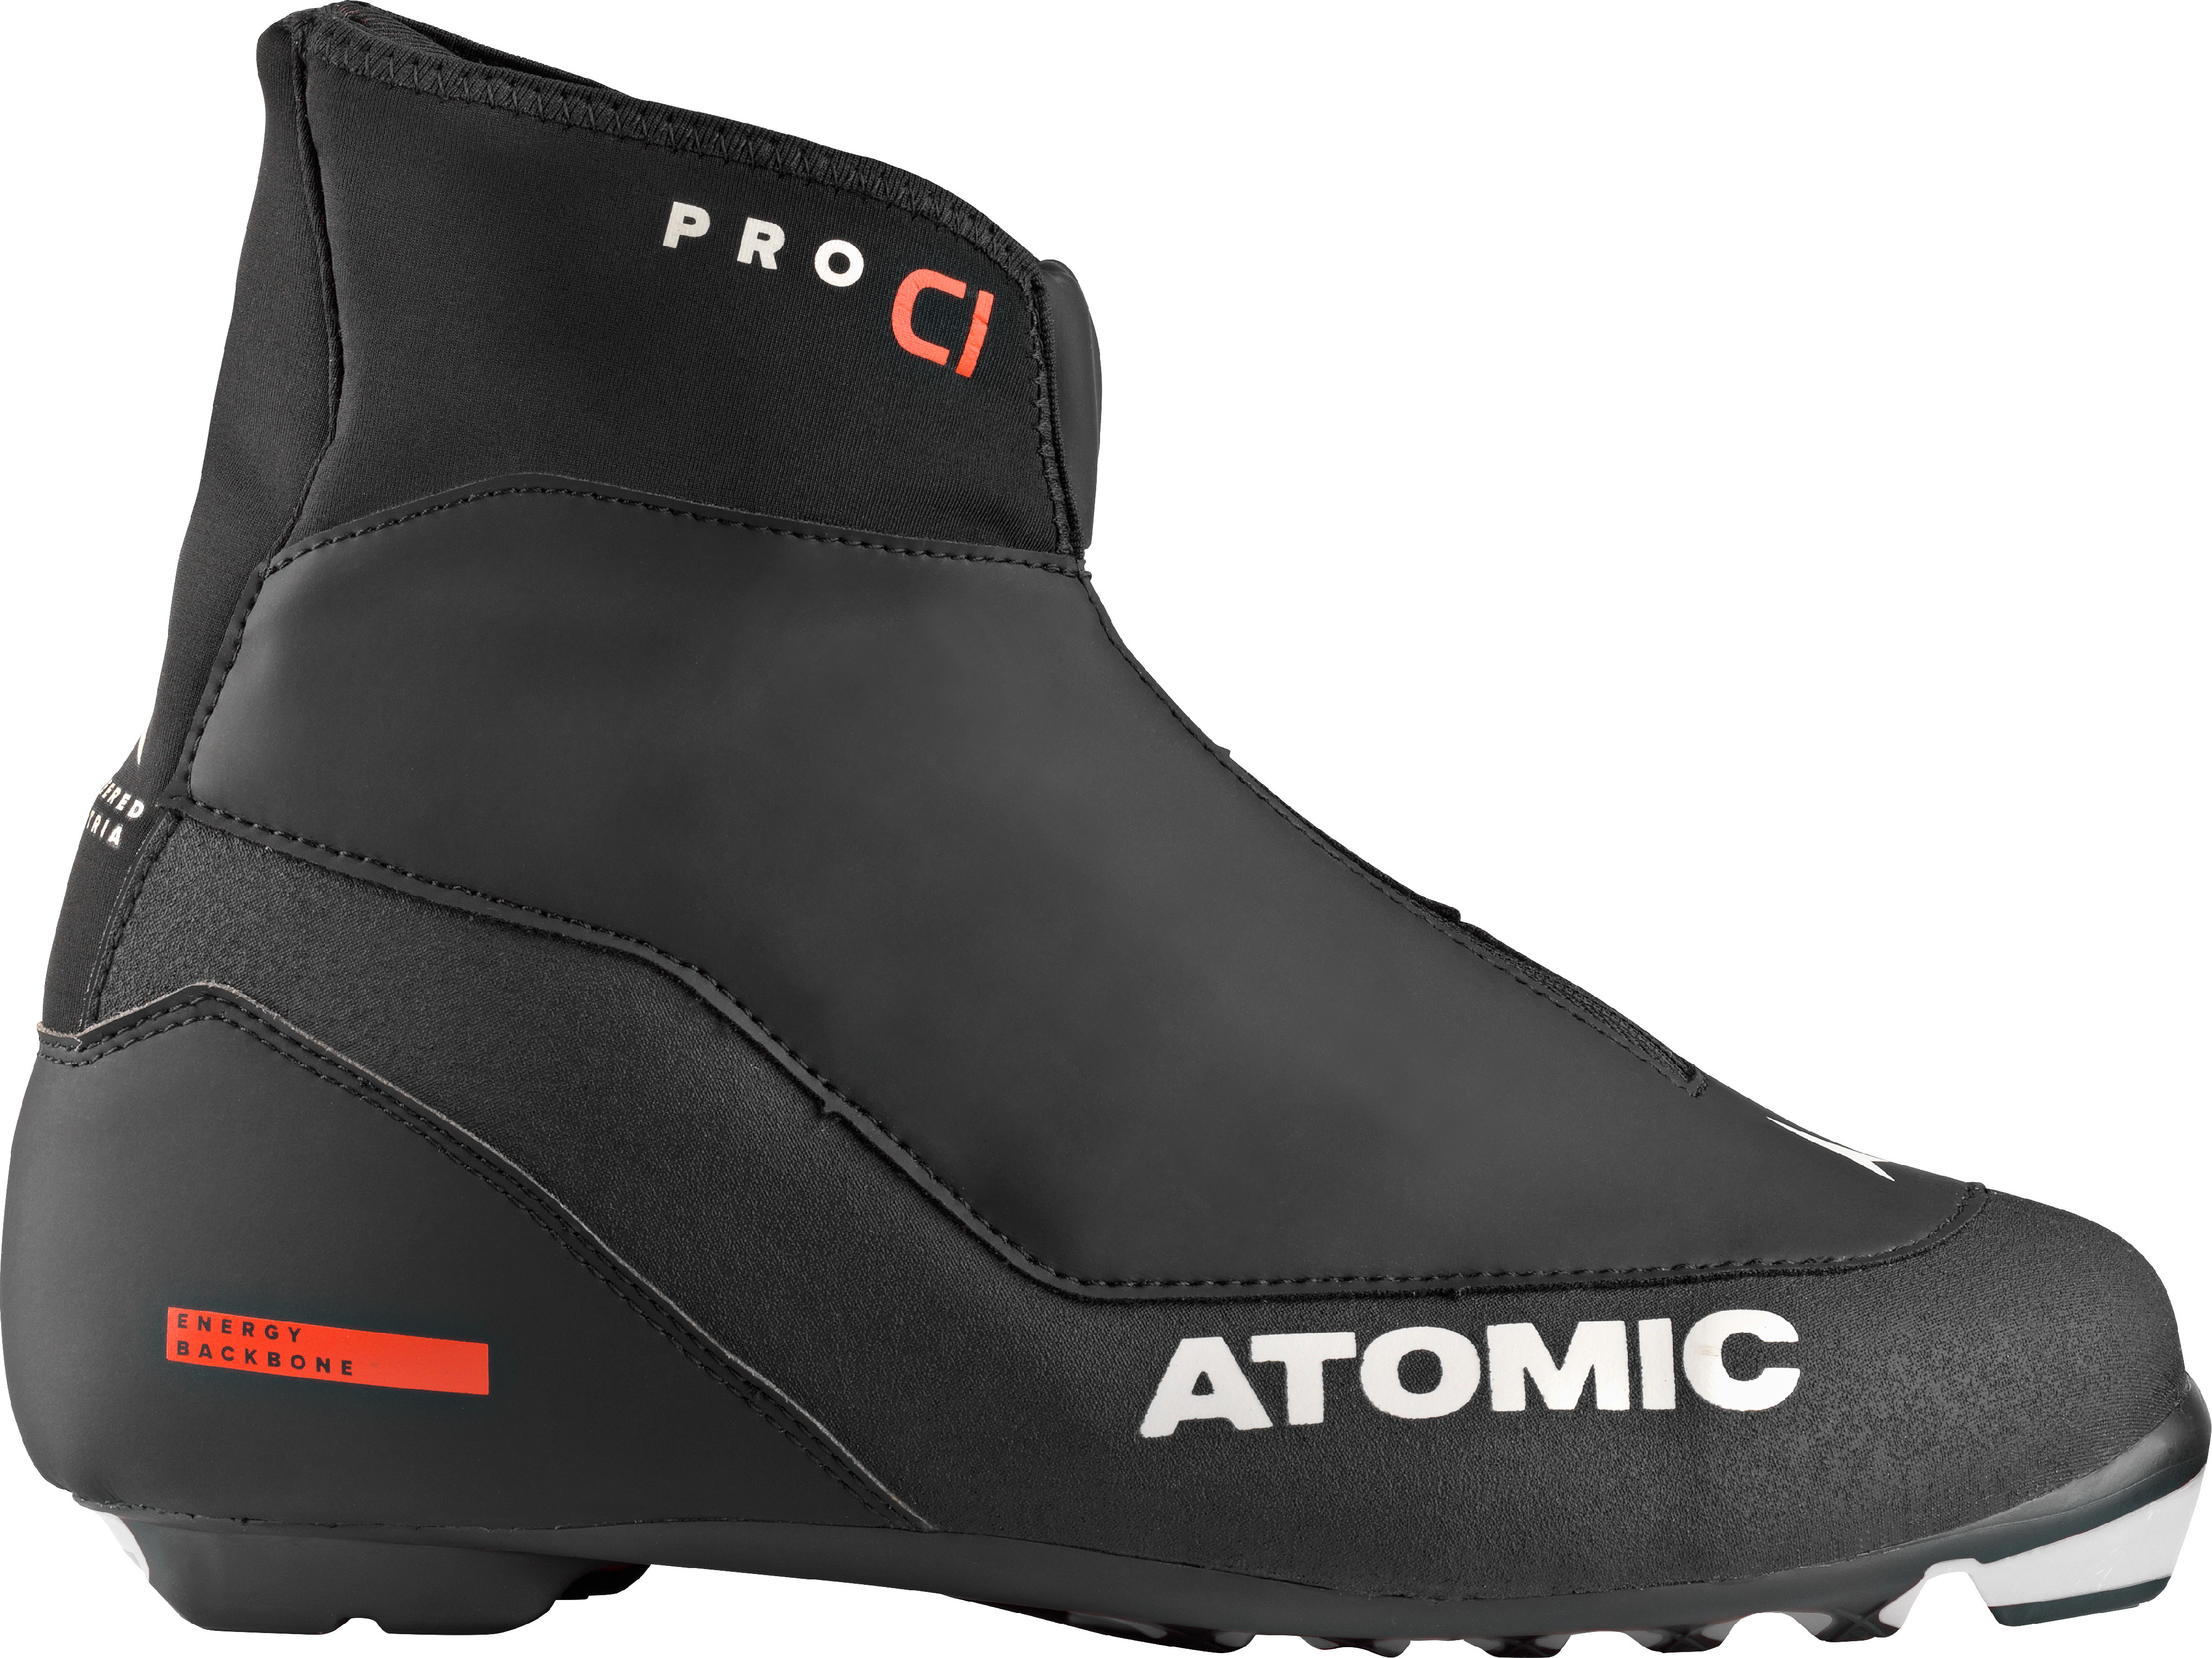 Boty Atomic Pro C1 Black 23/24 Velikost: 42